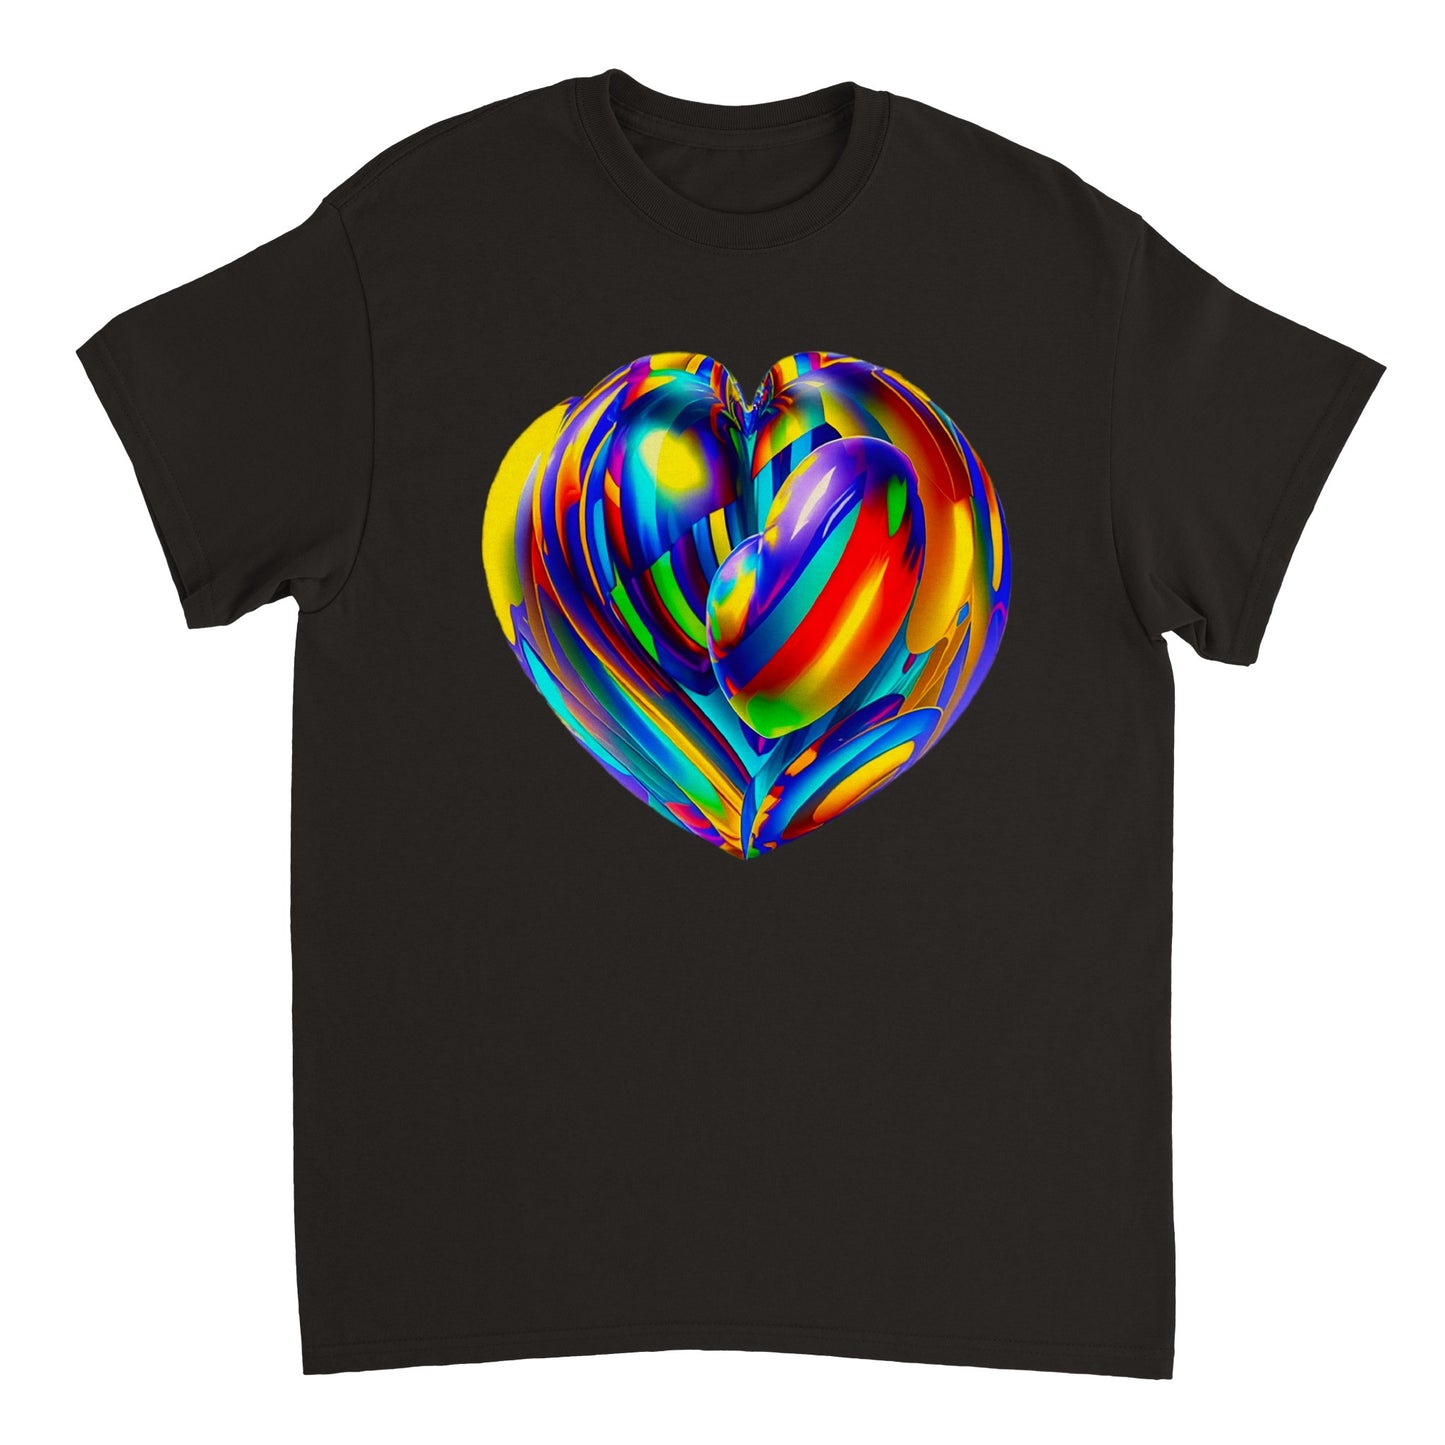 Love Heart - Heavyweight Unisex Crewneck T-shirt 86